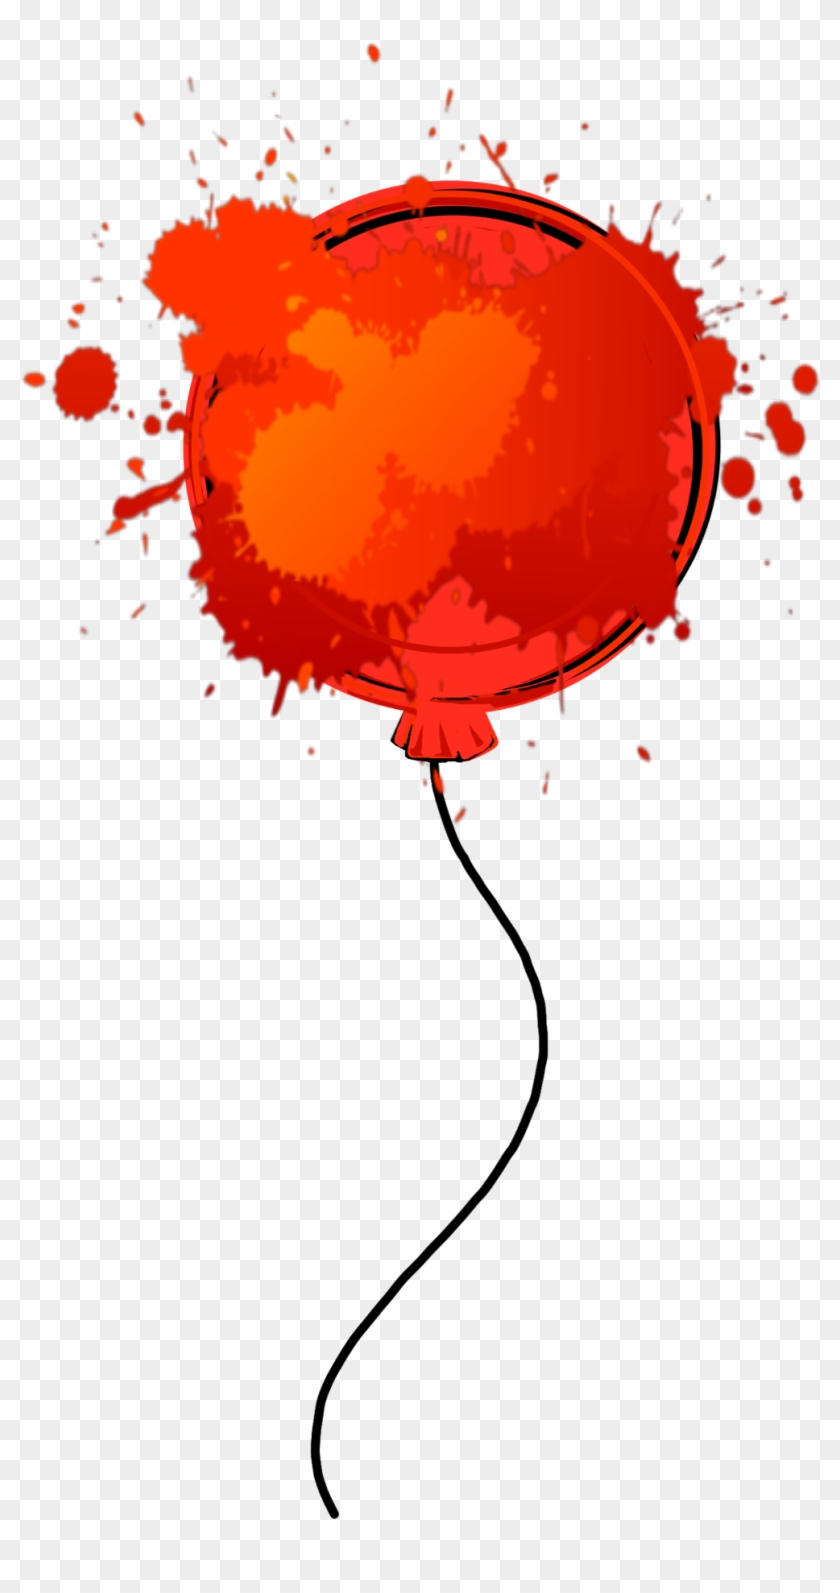 #red #balloon #paint #splatter - Illustration Clipart #2816555